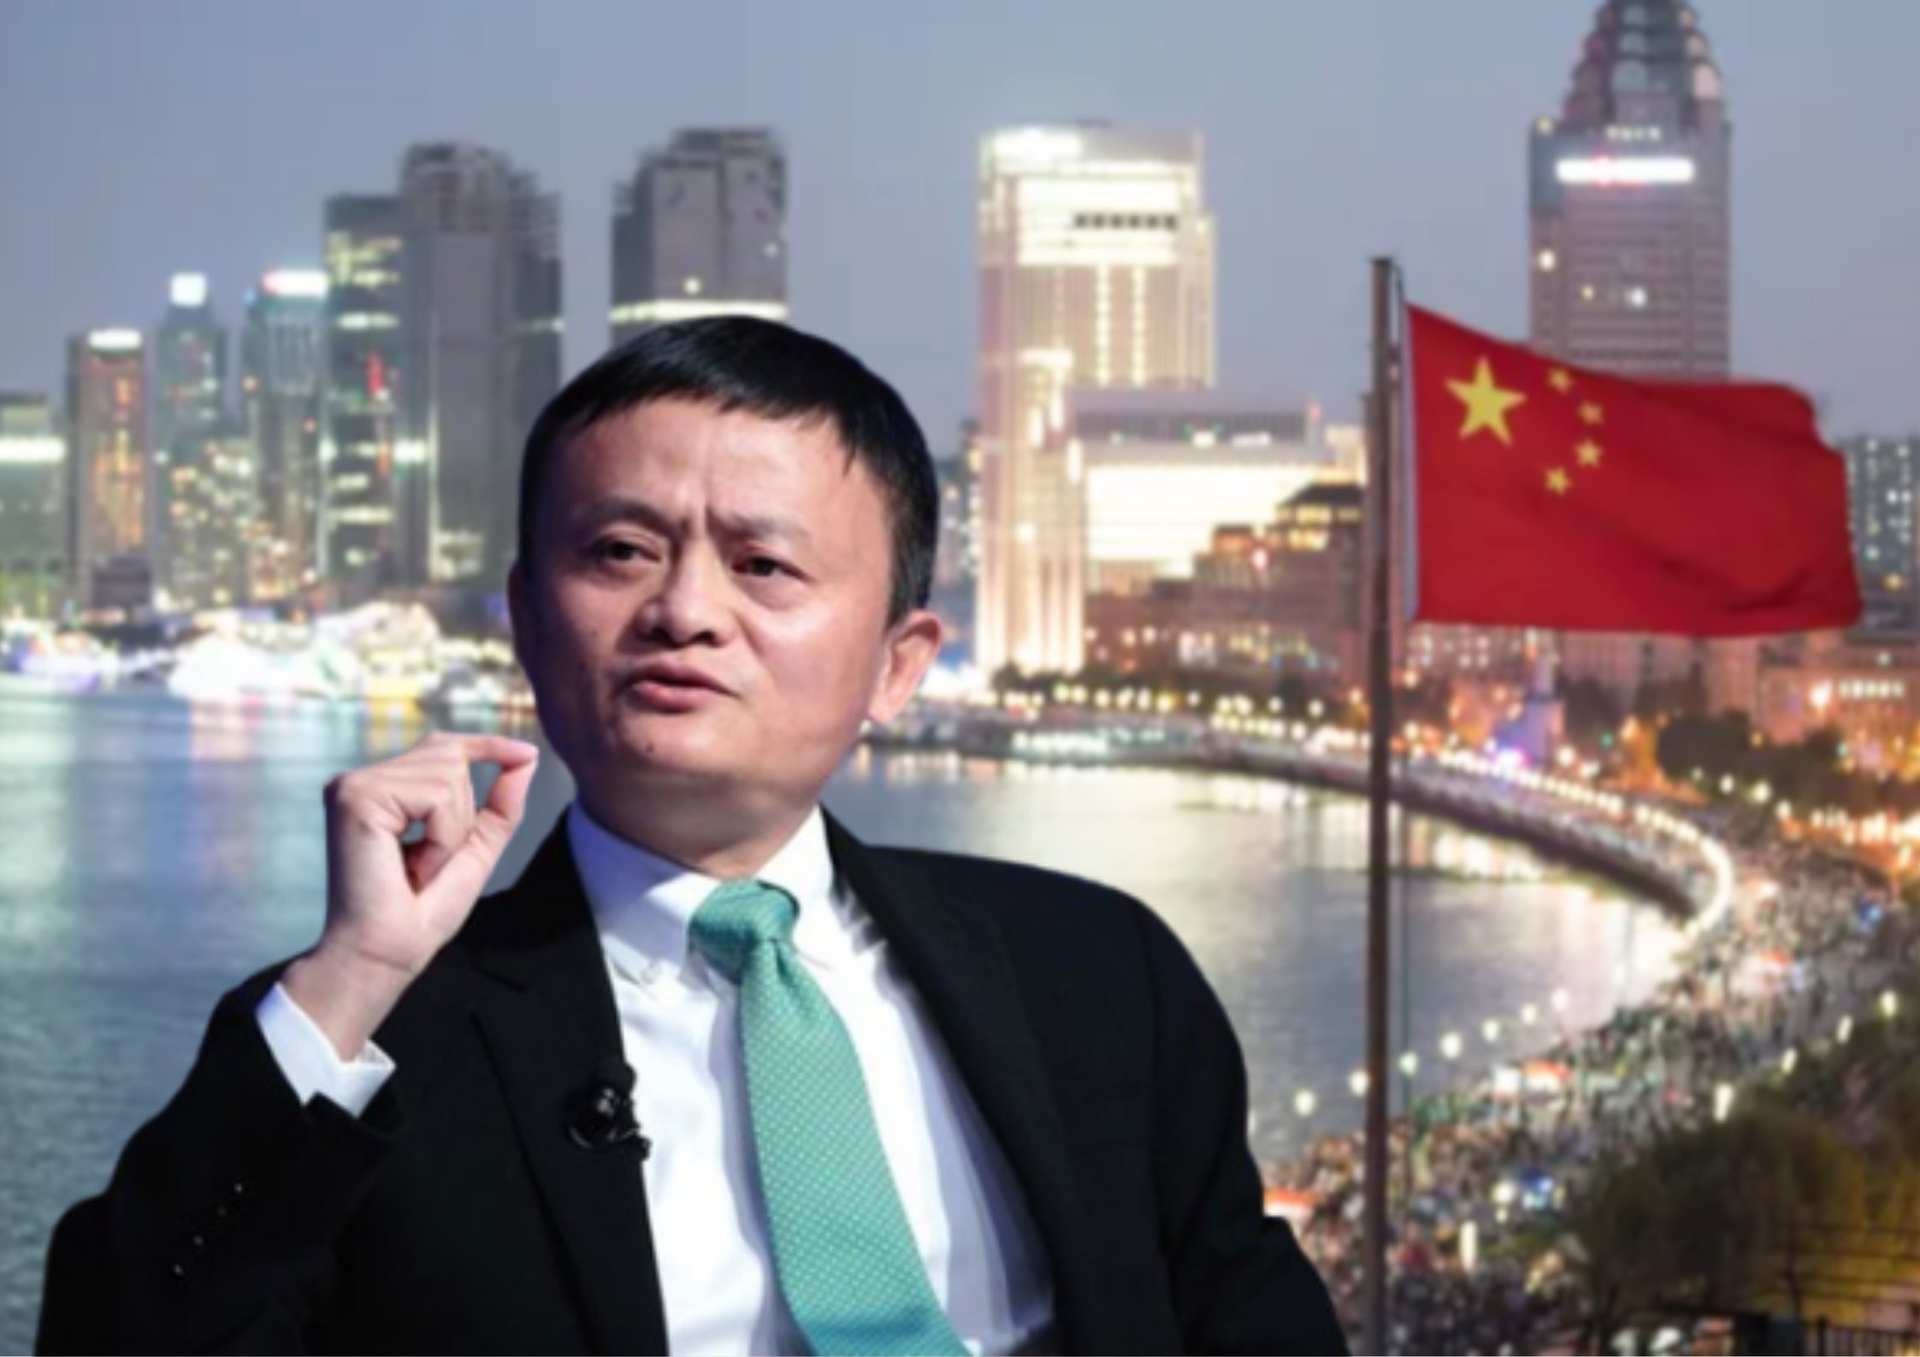 Ngôi sao mới nổi, đe dọa vị thế của Alibaba đến nỗi Jack Ma phải sốt sắng lên tiếng sau 3 năm im lặng đang làm ăn ra sao? - Ảnh 1.